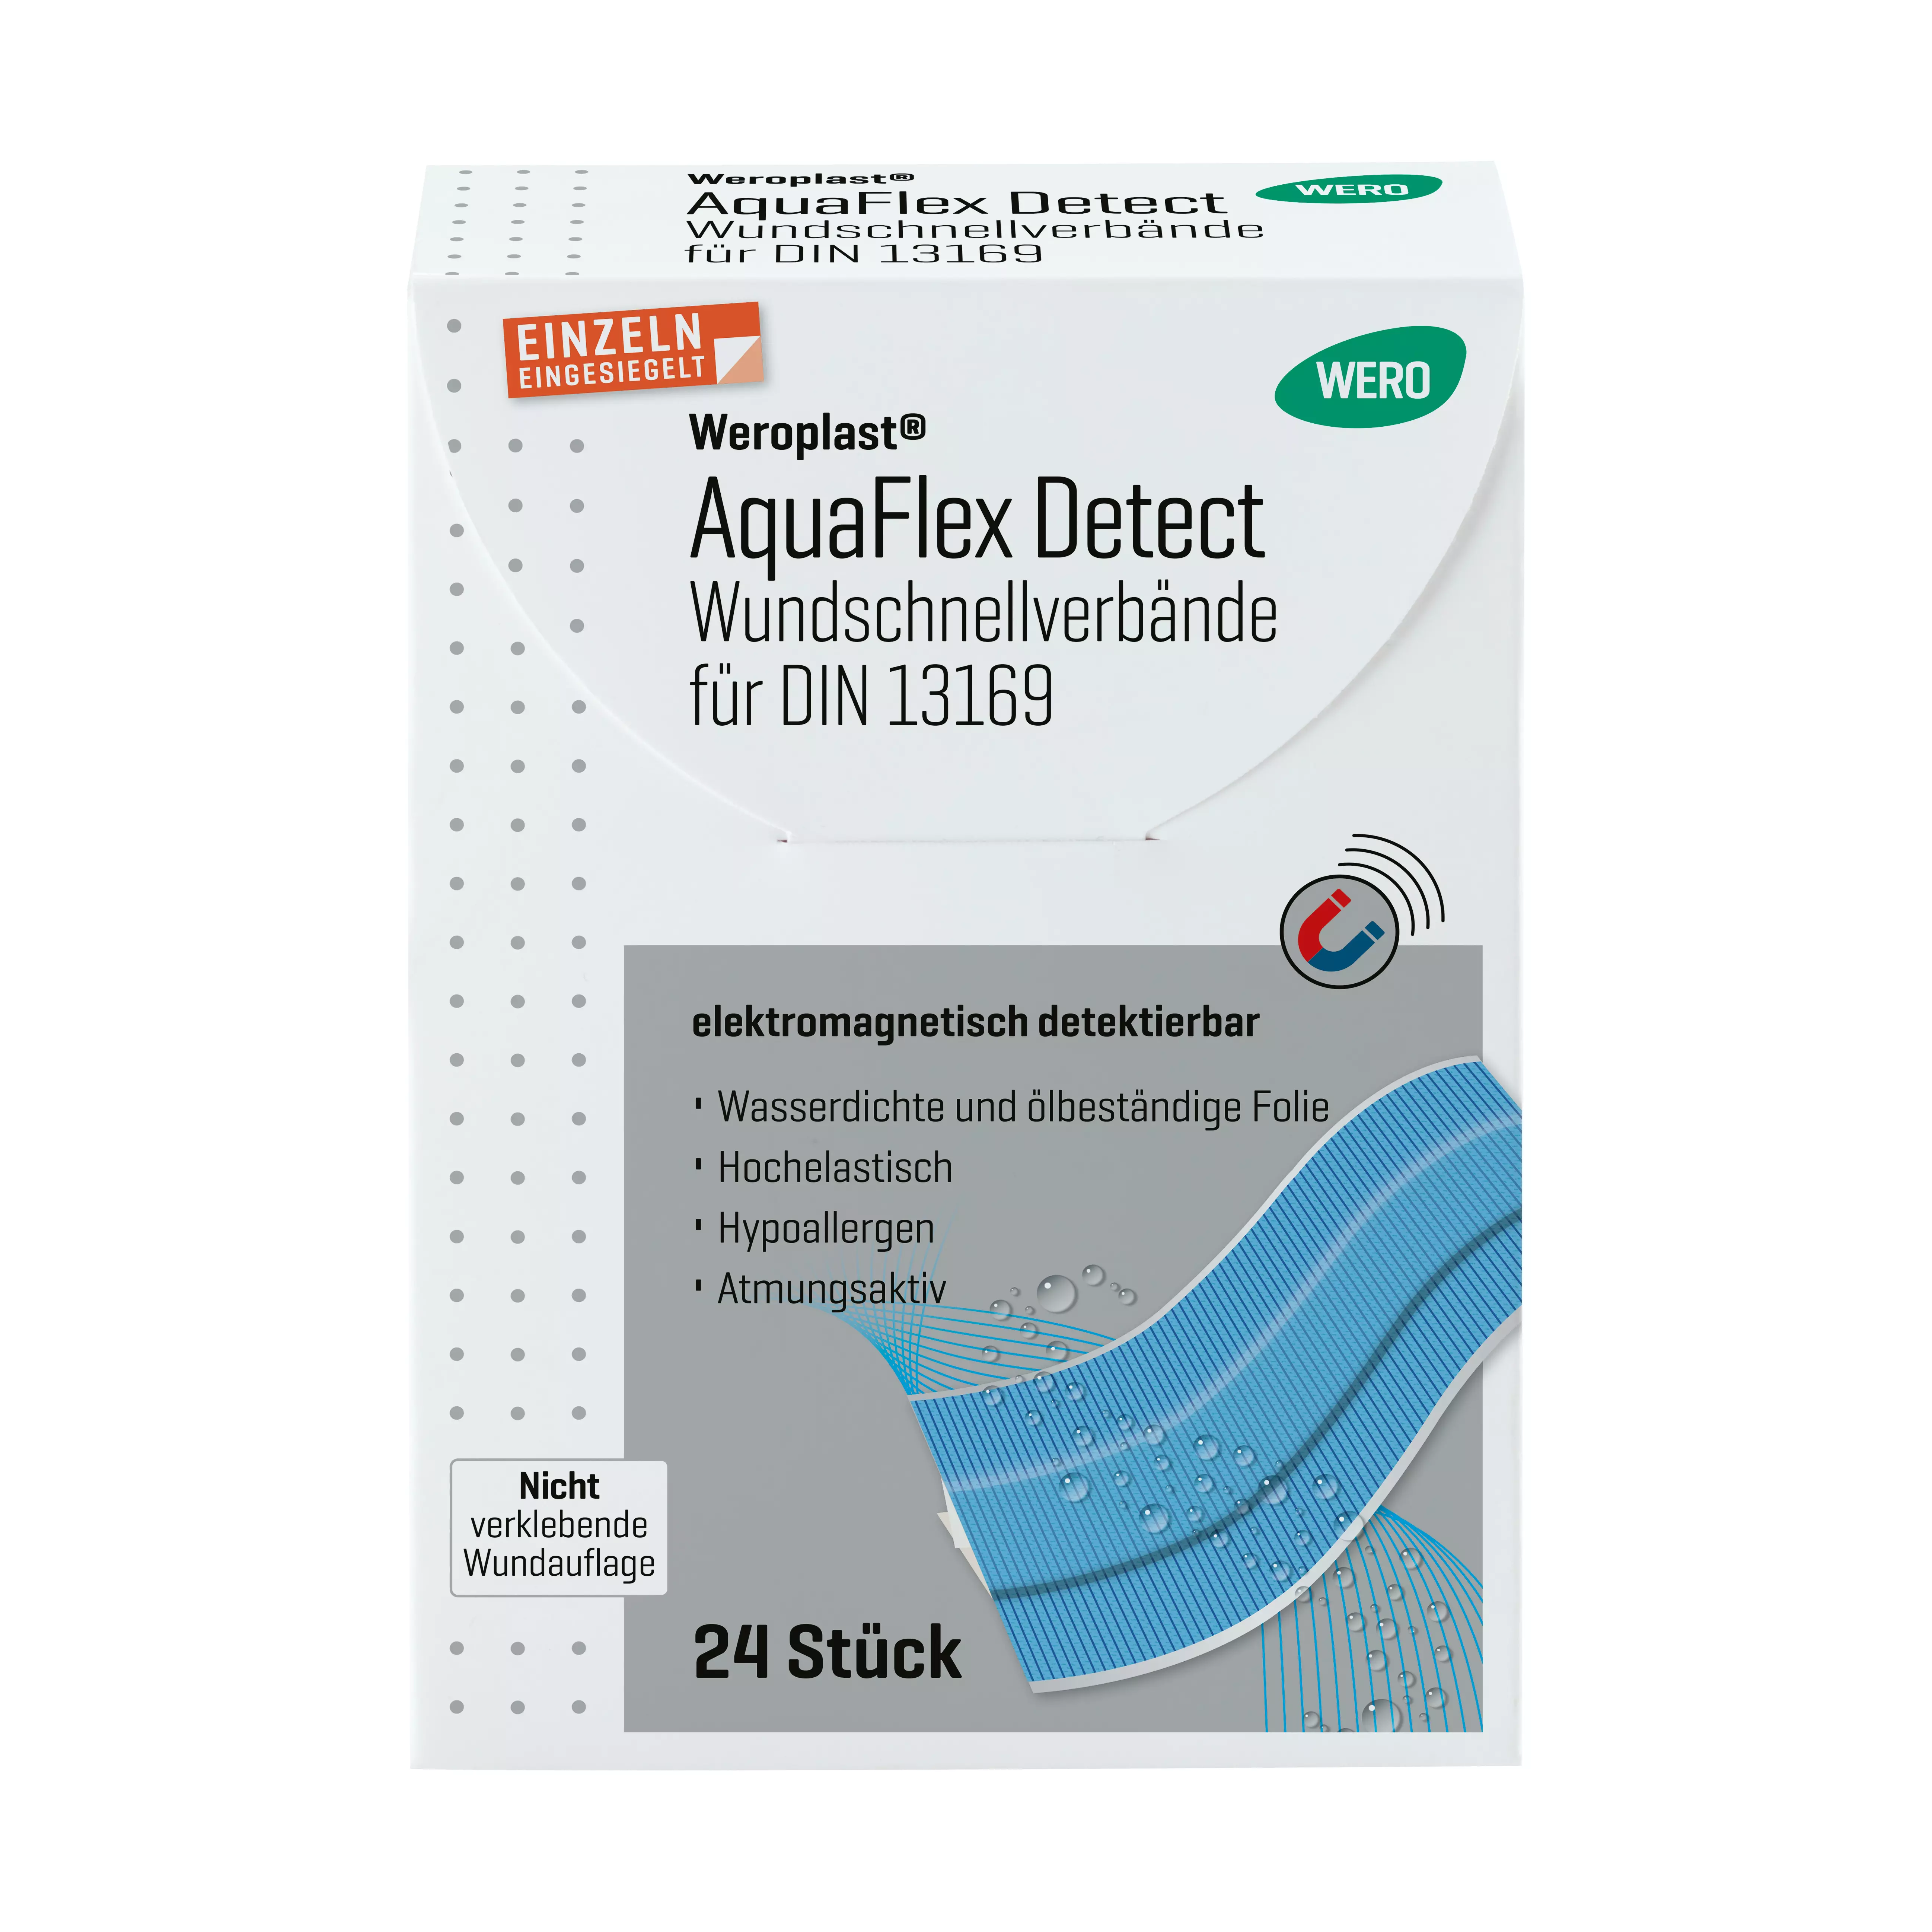 Weroplast® AquaFlex Detect Pflaster - Wundschnellverbände DIN 13169